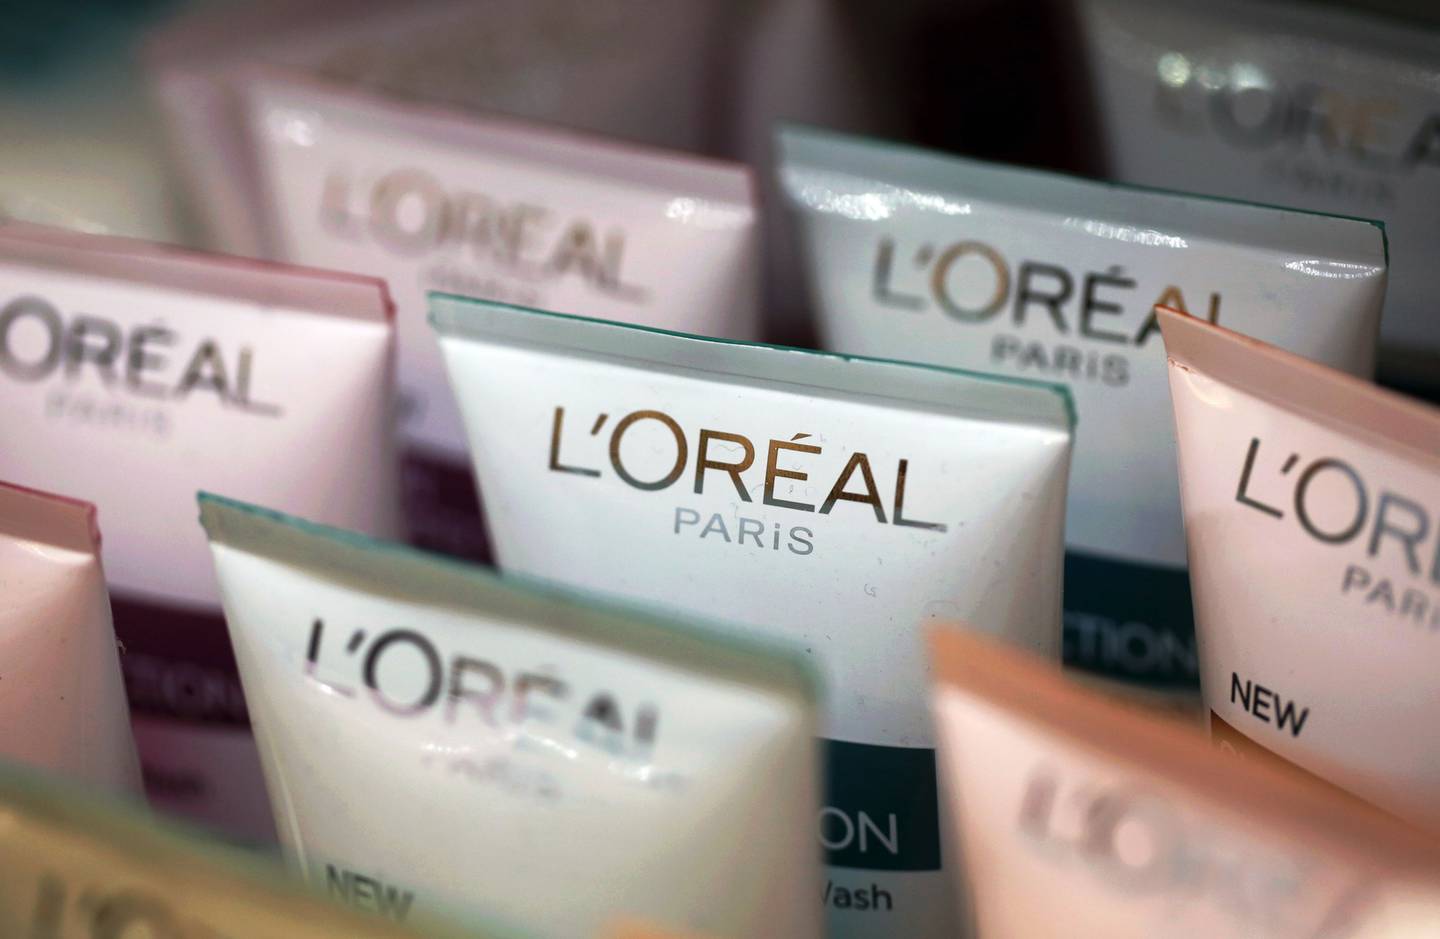 Tubos de crema L'Oreal Skin Perfection, fabricada por L'Oreal SA, se encuentran a la venta dentro de una farmacia en Londres, Reino Unido.